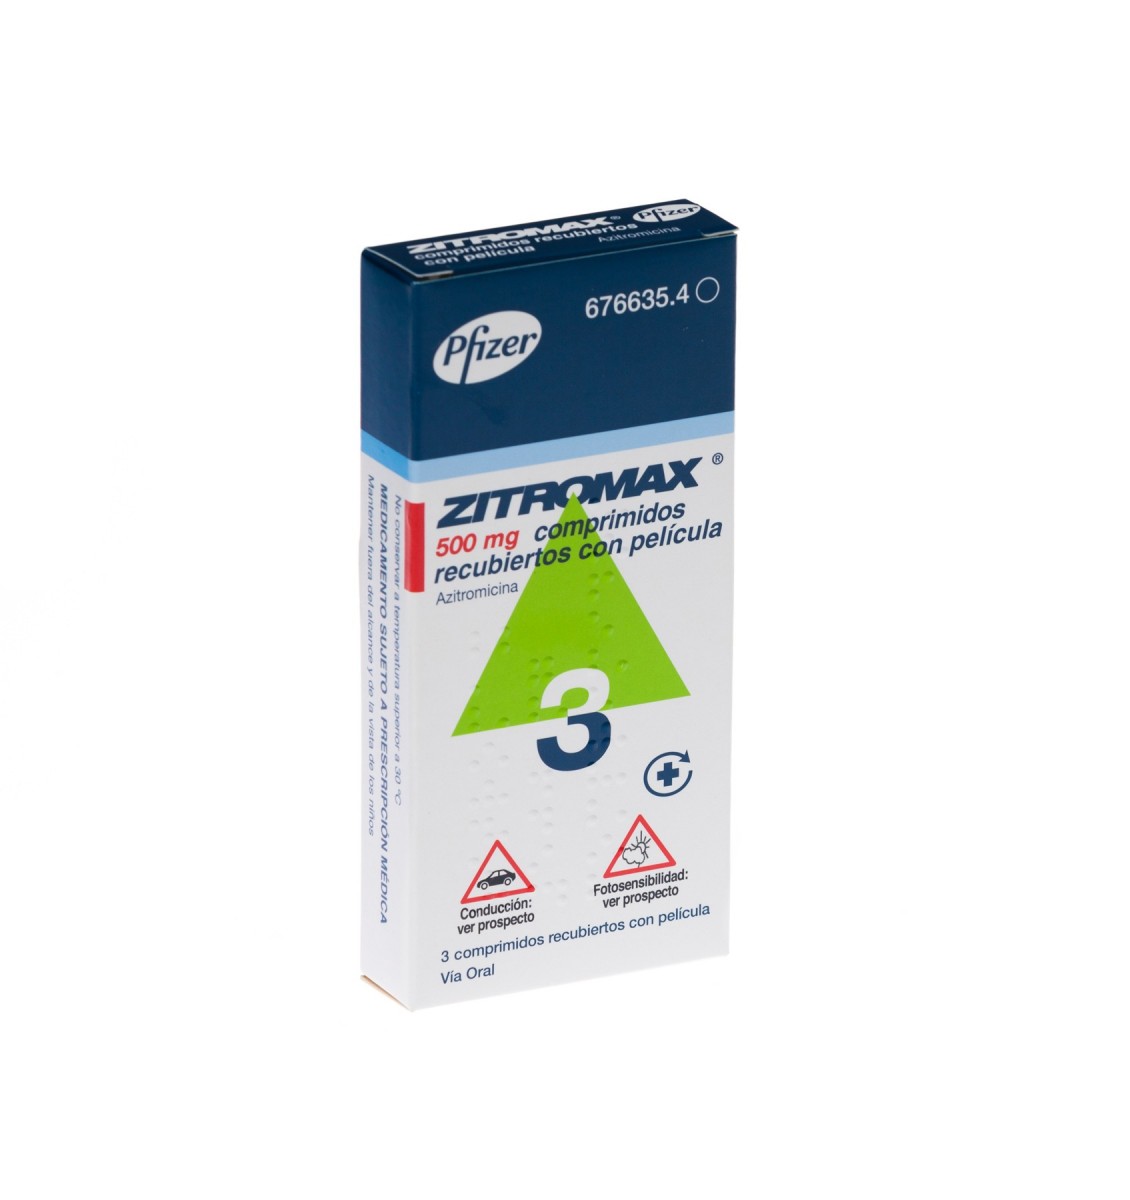 ZITROMAX 500 mg COMPRIMIDOS RECUBIERTOS CON PELICULA, 3 comprimidos fotografía del envase.